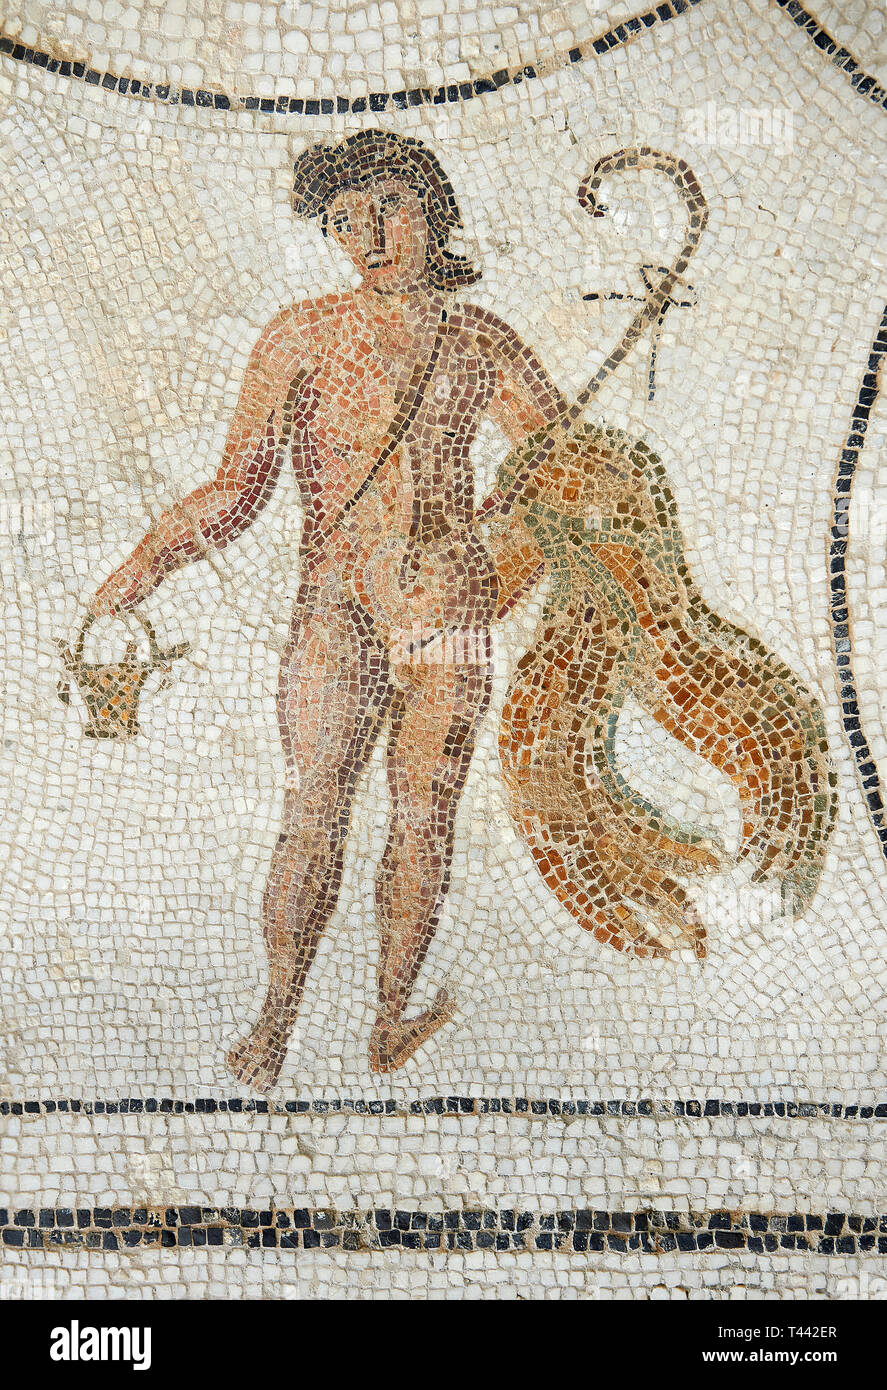 Foto di mosaici romani disegno raffigurante una figura, dall'antica città romana di Thysdrus. Iii secolo D.C. El Djem Museo Archeologico, El Djem, Foto Stock